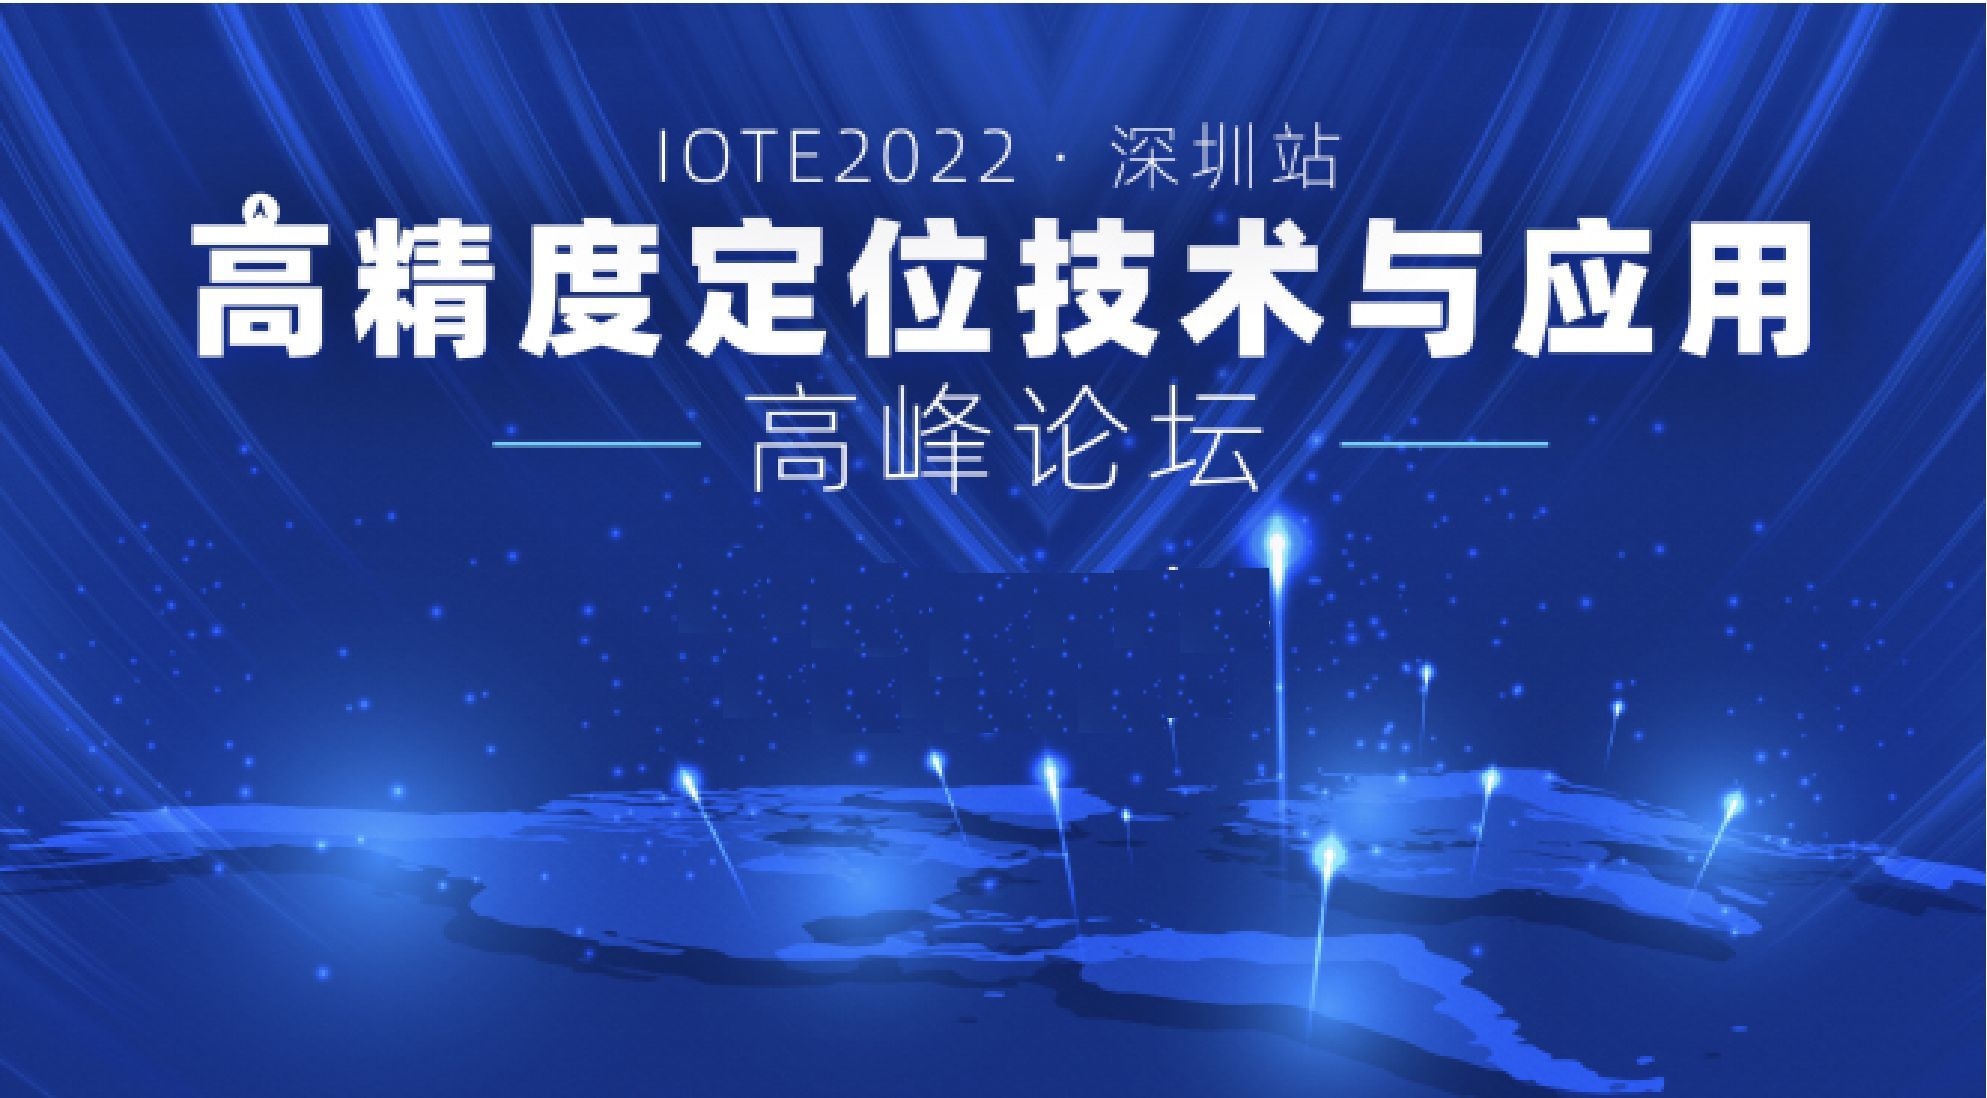 IOTE2022·深圳高精度定位技术与应用高峰论坛